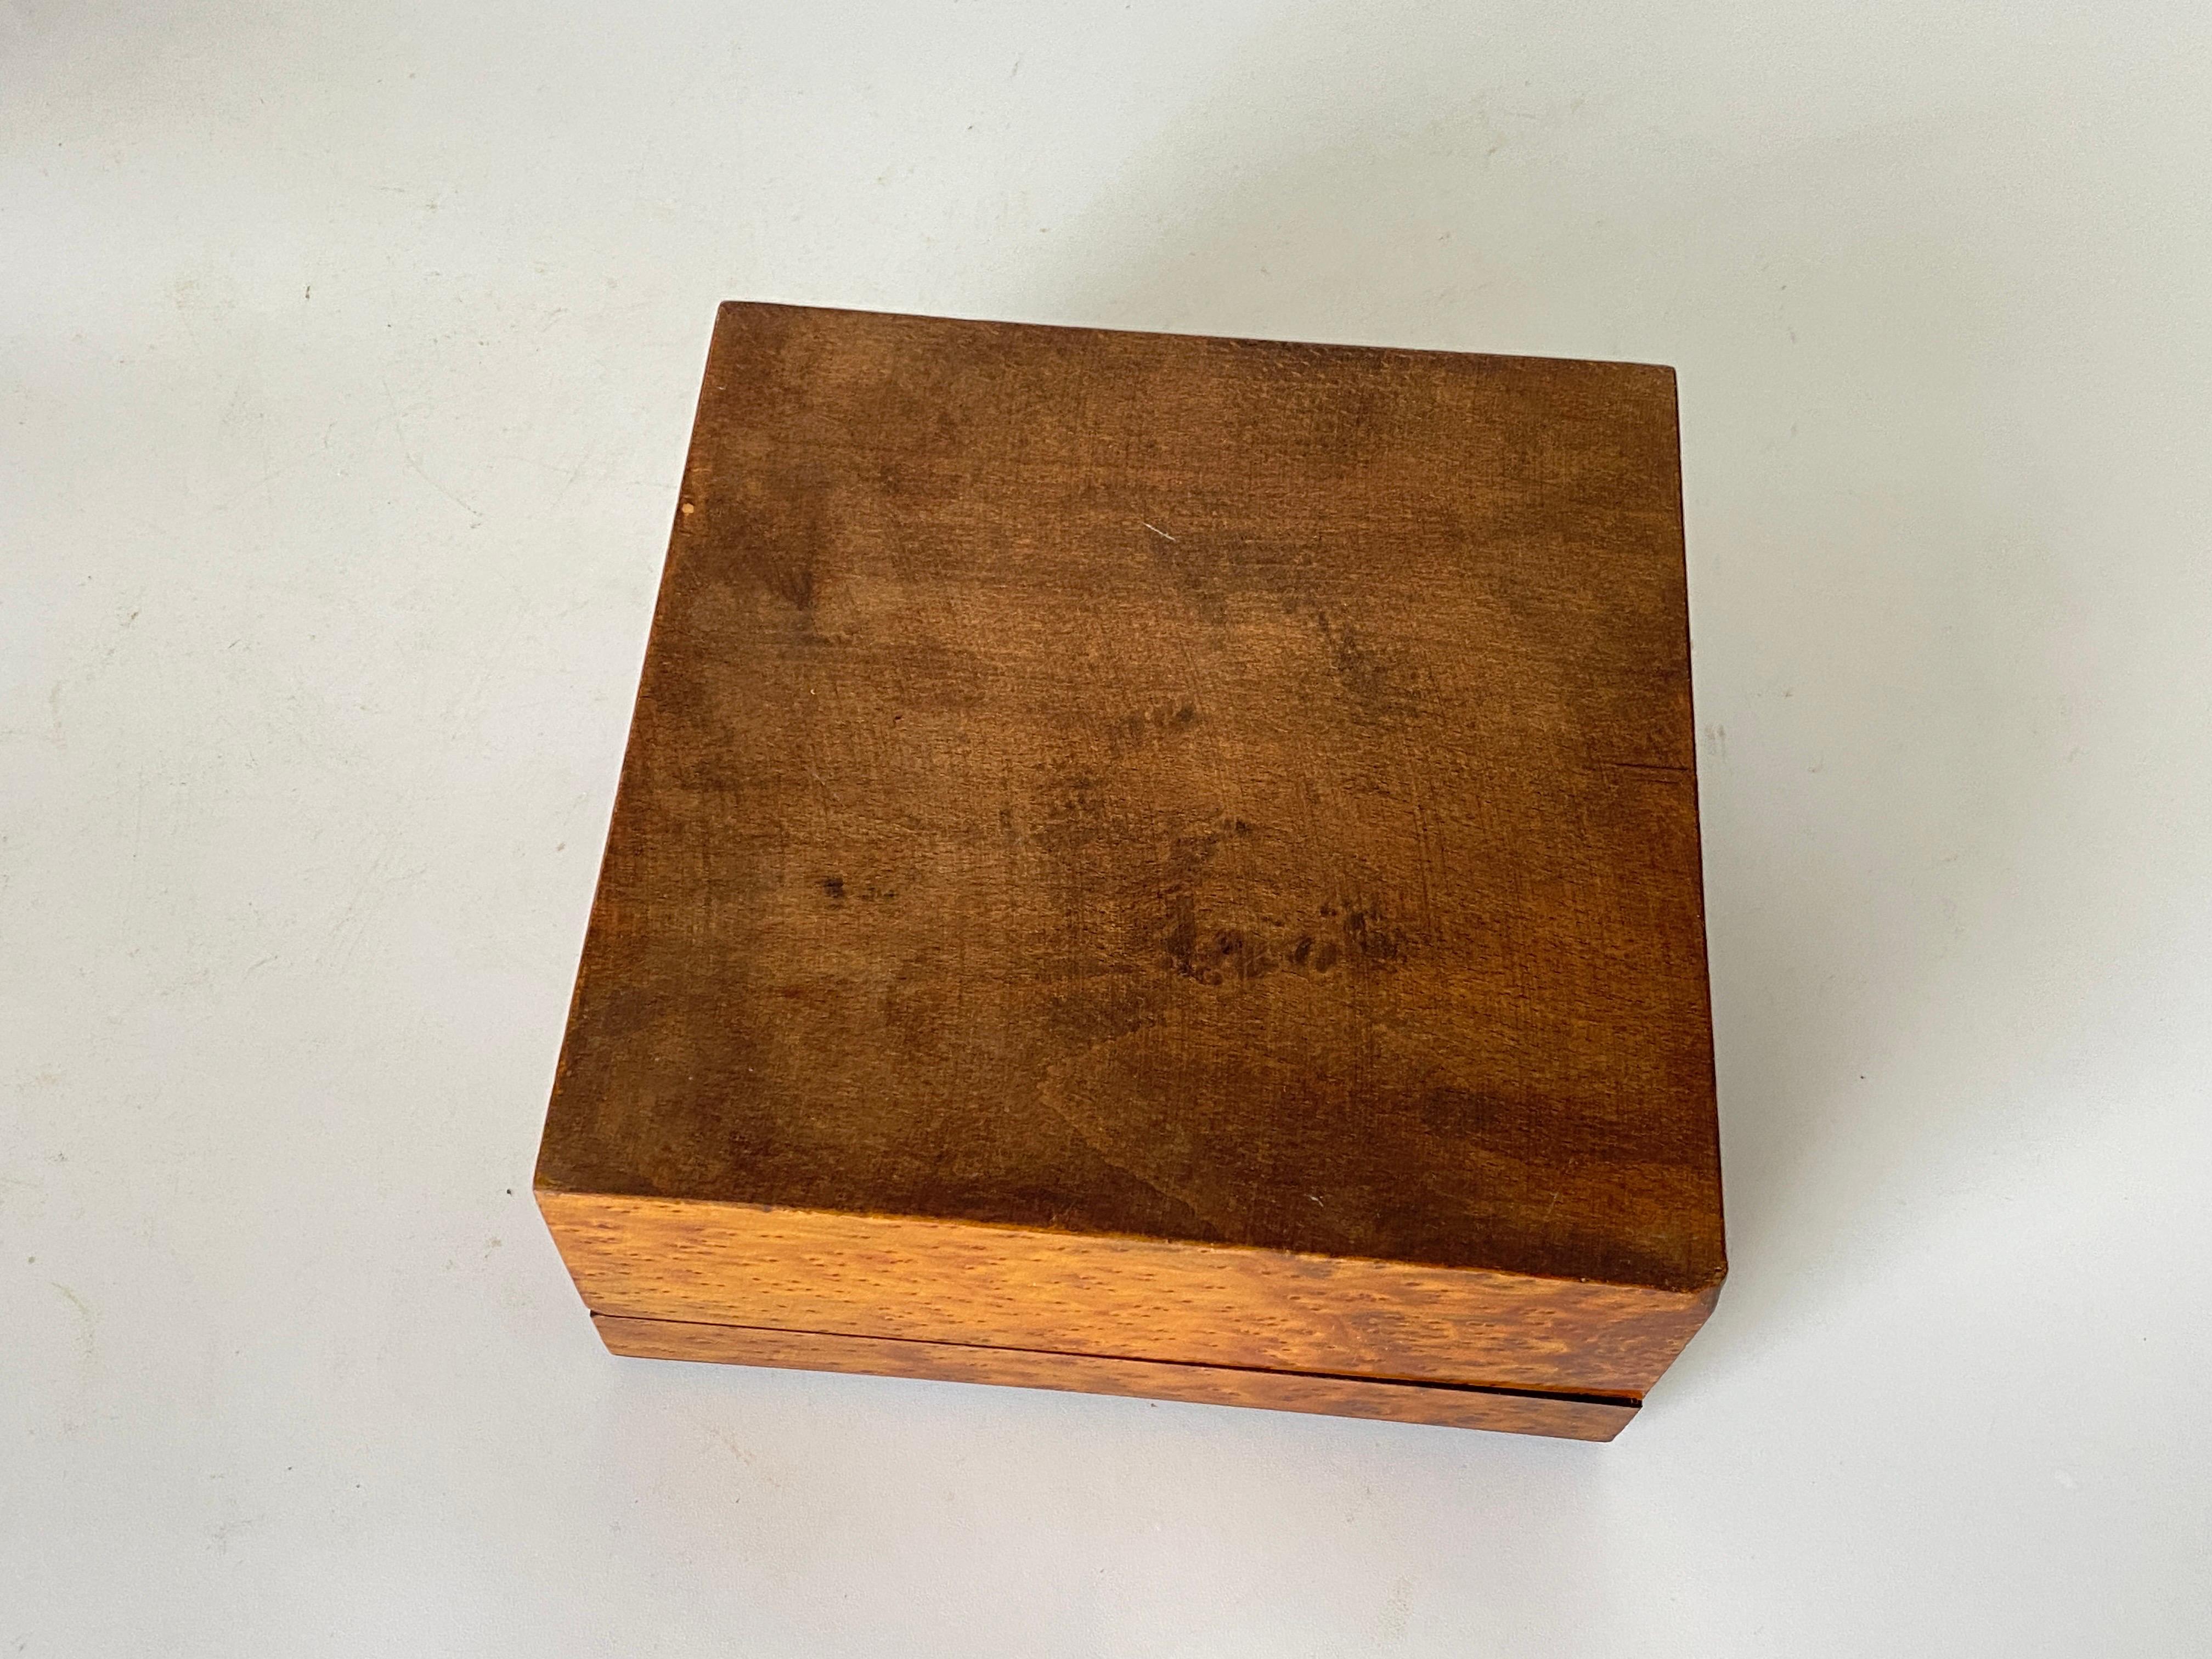 Cette boîte est en bois de ronce. Il a été fabriqué en France dans les années 1870. Il est de couleur marron et en bon état. 
Soie noire à l'intérieur.
Armoiries sur le dessus du couvercle.